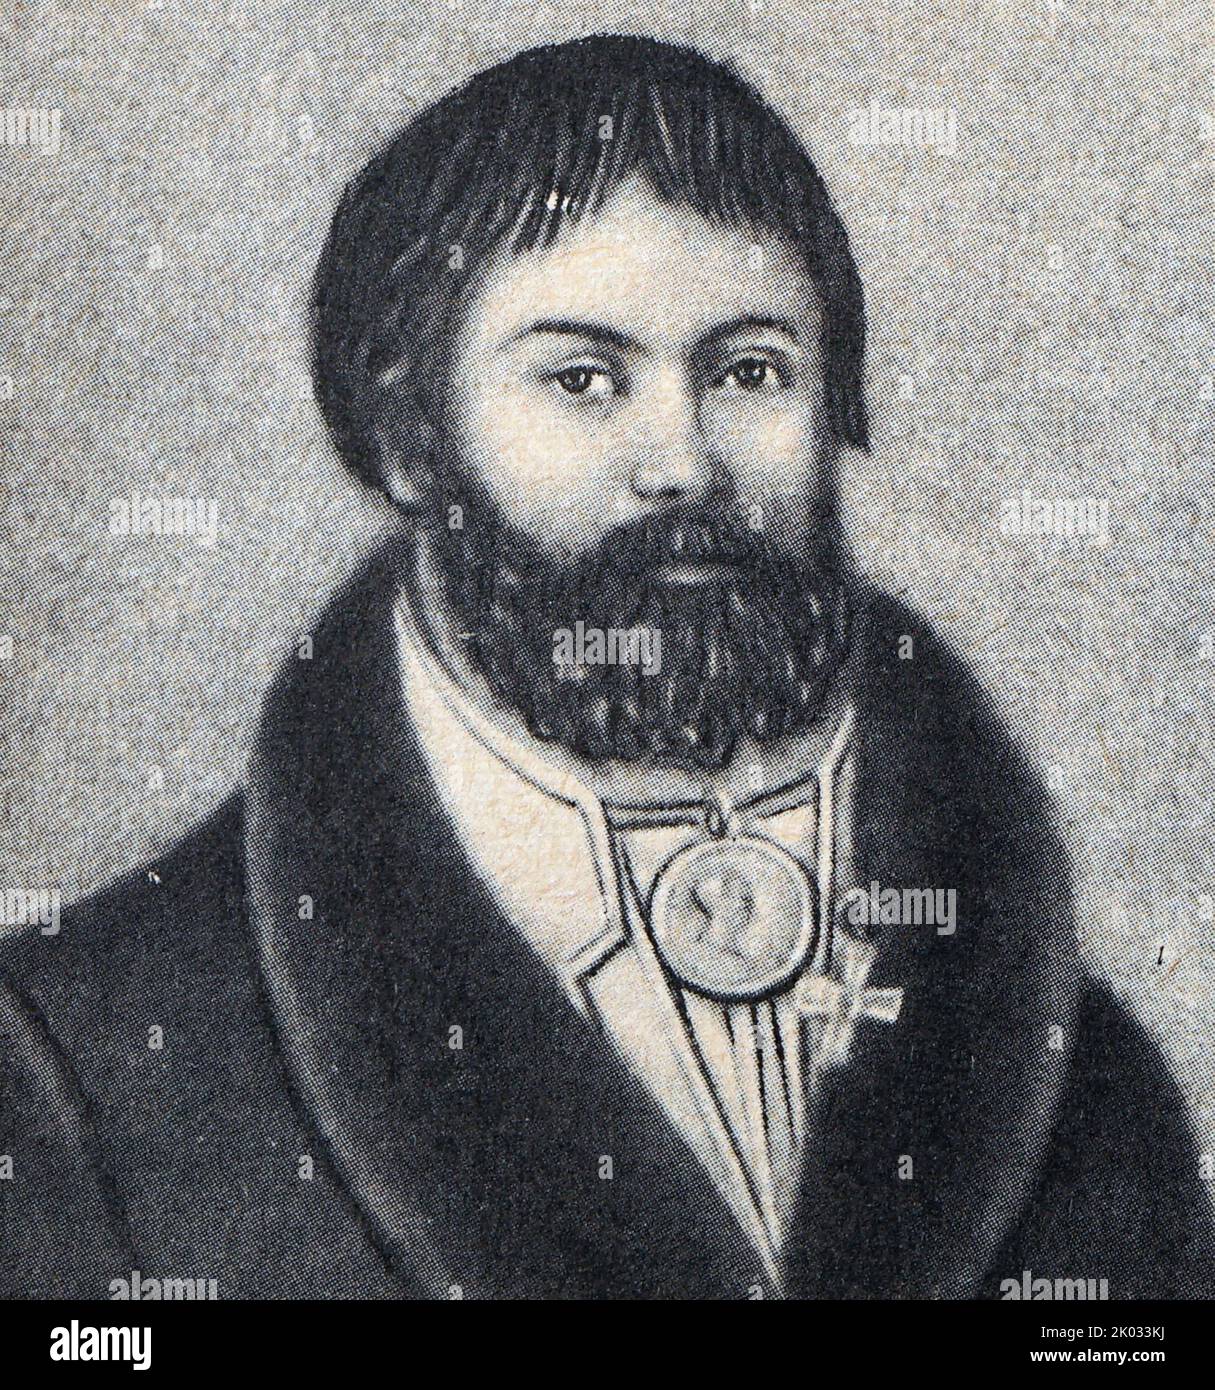 Gerasim Kurin war der Anführer eines russischen Guerillakämpfers im Vaterländischen Krieg von 1812, der gegen die eindringende französische Grande Armee kämpfte. Stockfoto